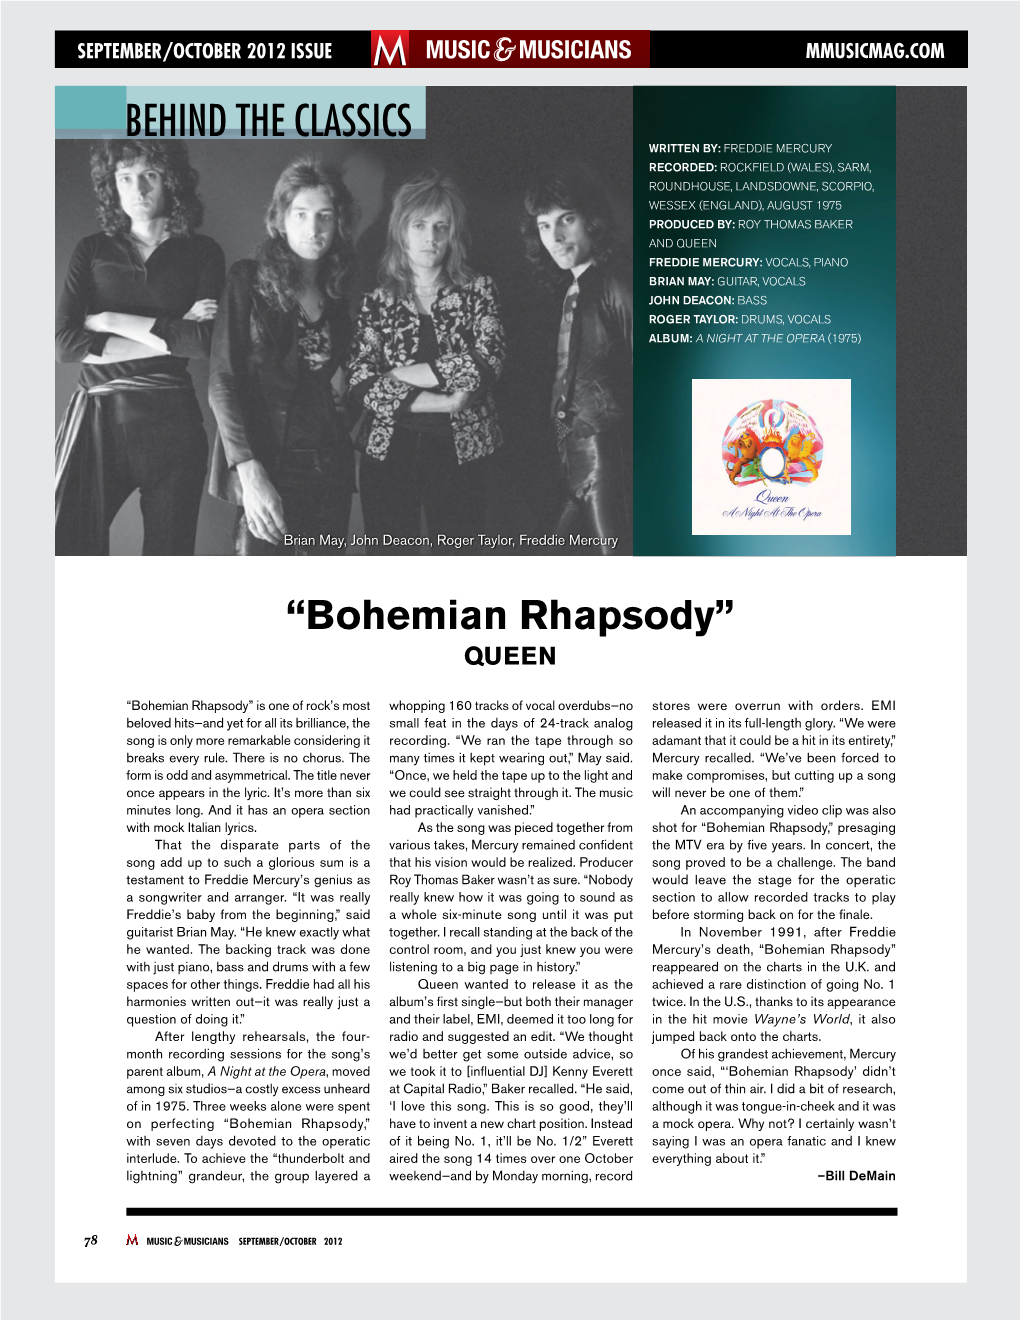 Bohemian Rhapsody” QUEEN